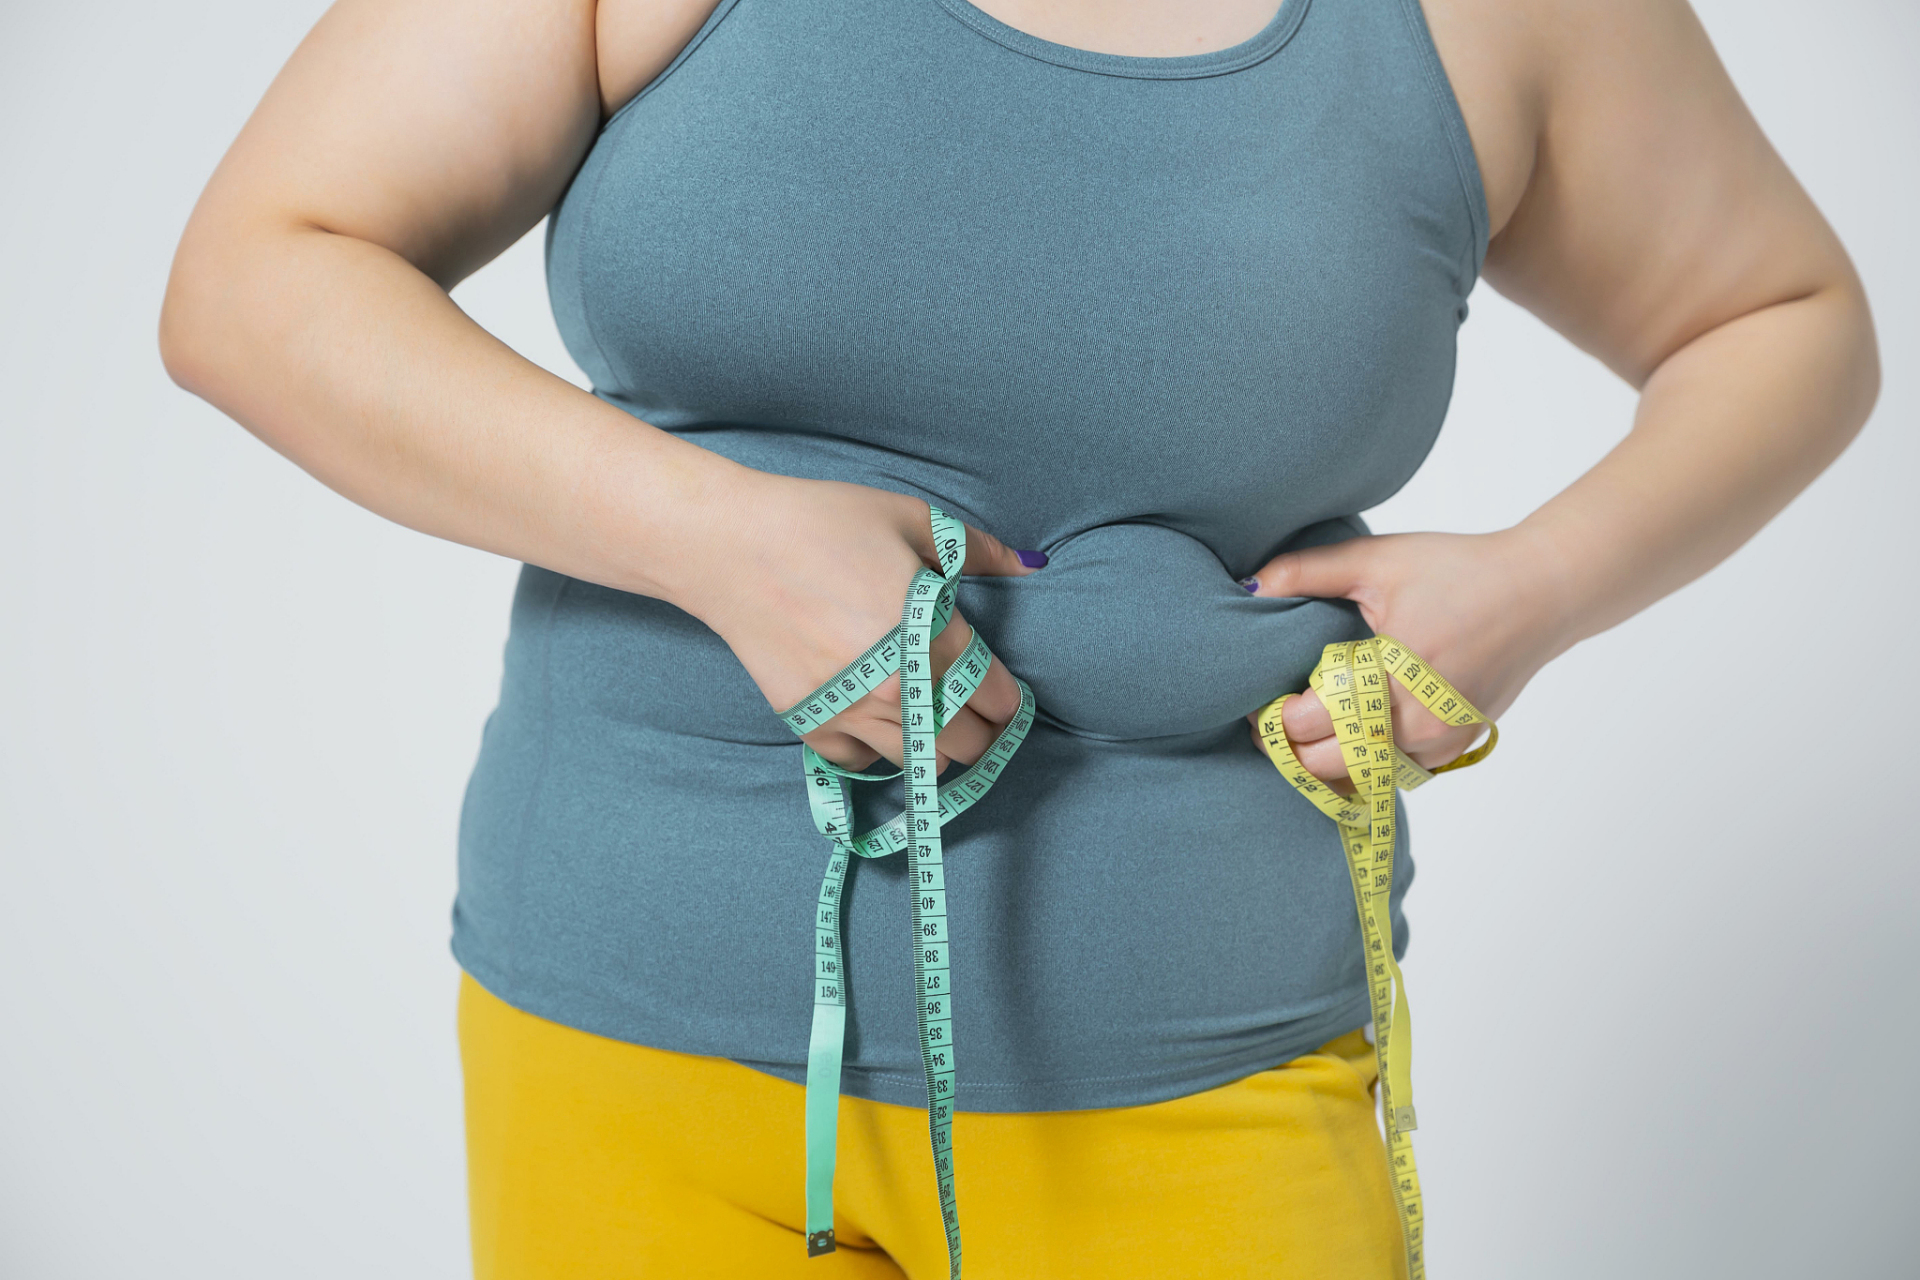 肚子肥胖的问题困扰着许多人,这种身材不匀称不仅影响外在形象,还会